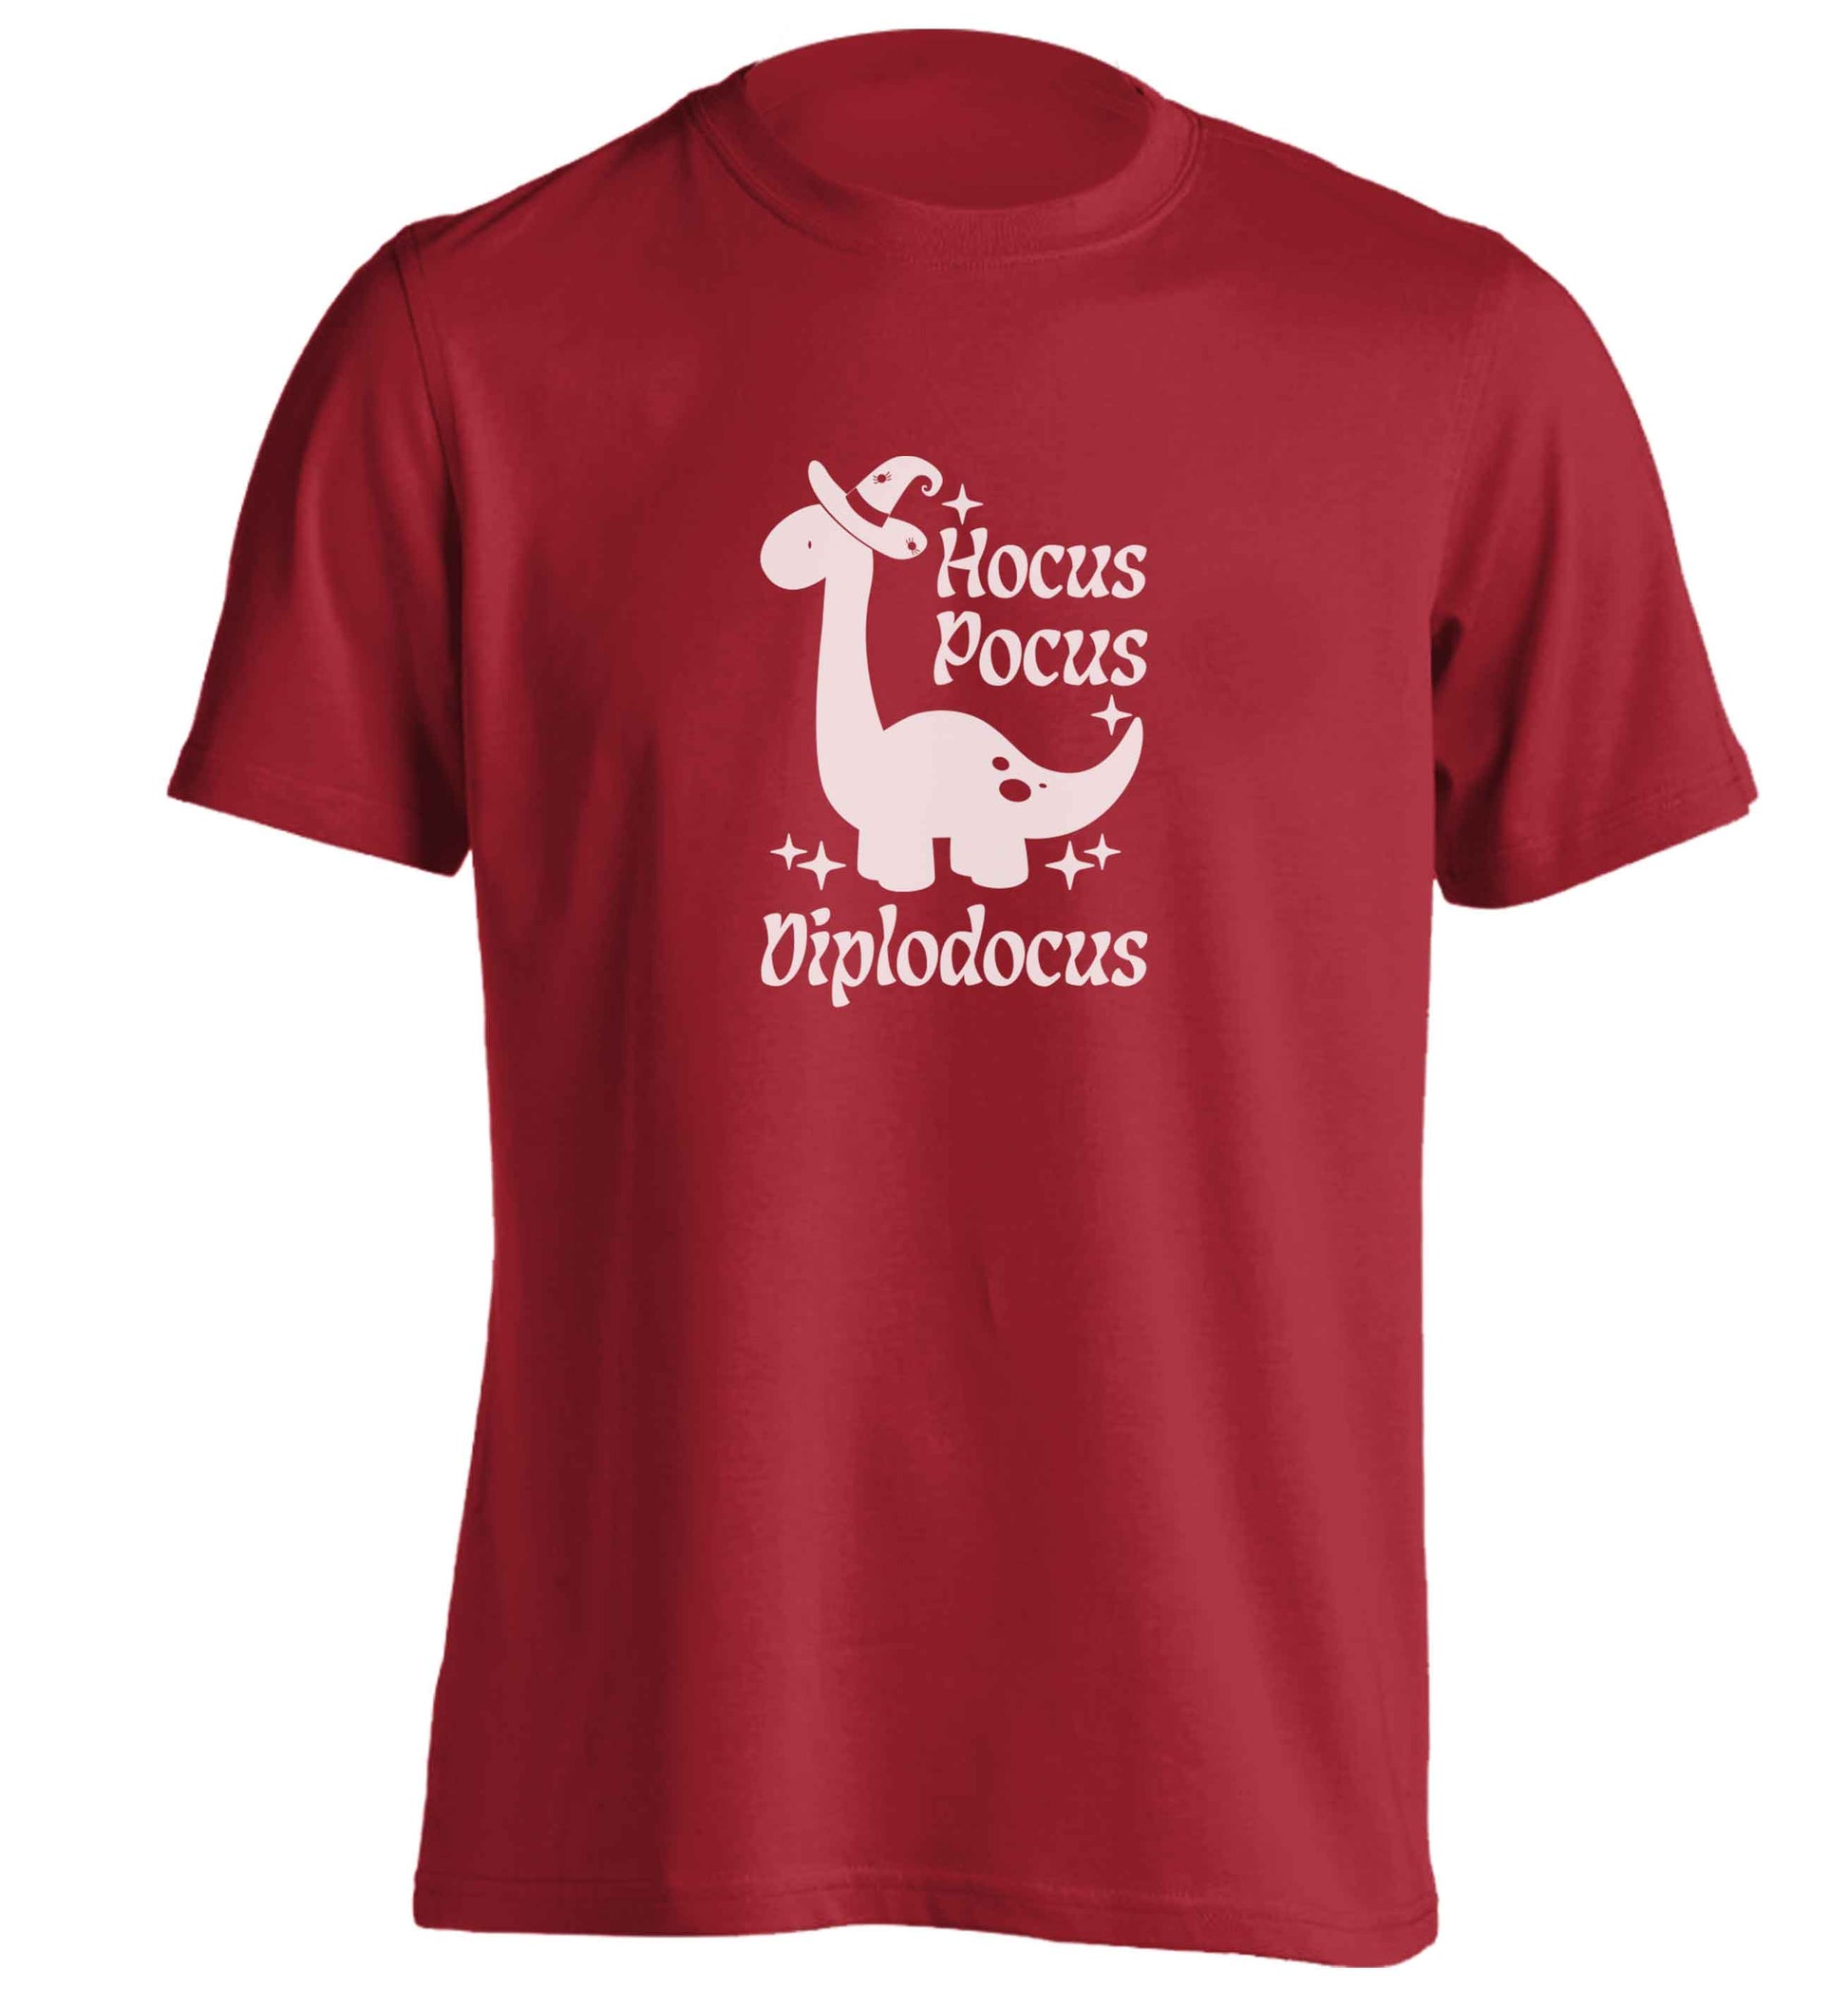 Hocus pocus diplodocus Kit adults unisex red Tshirt 2XL